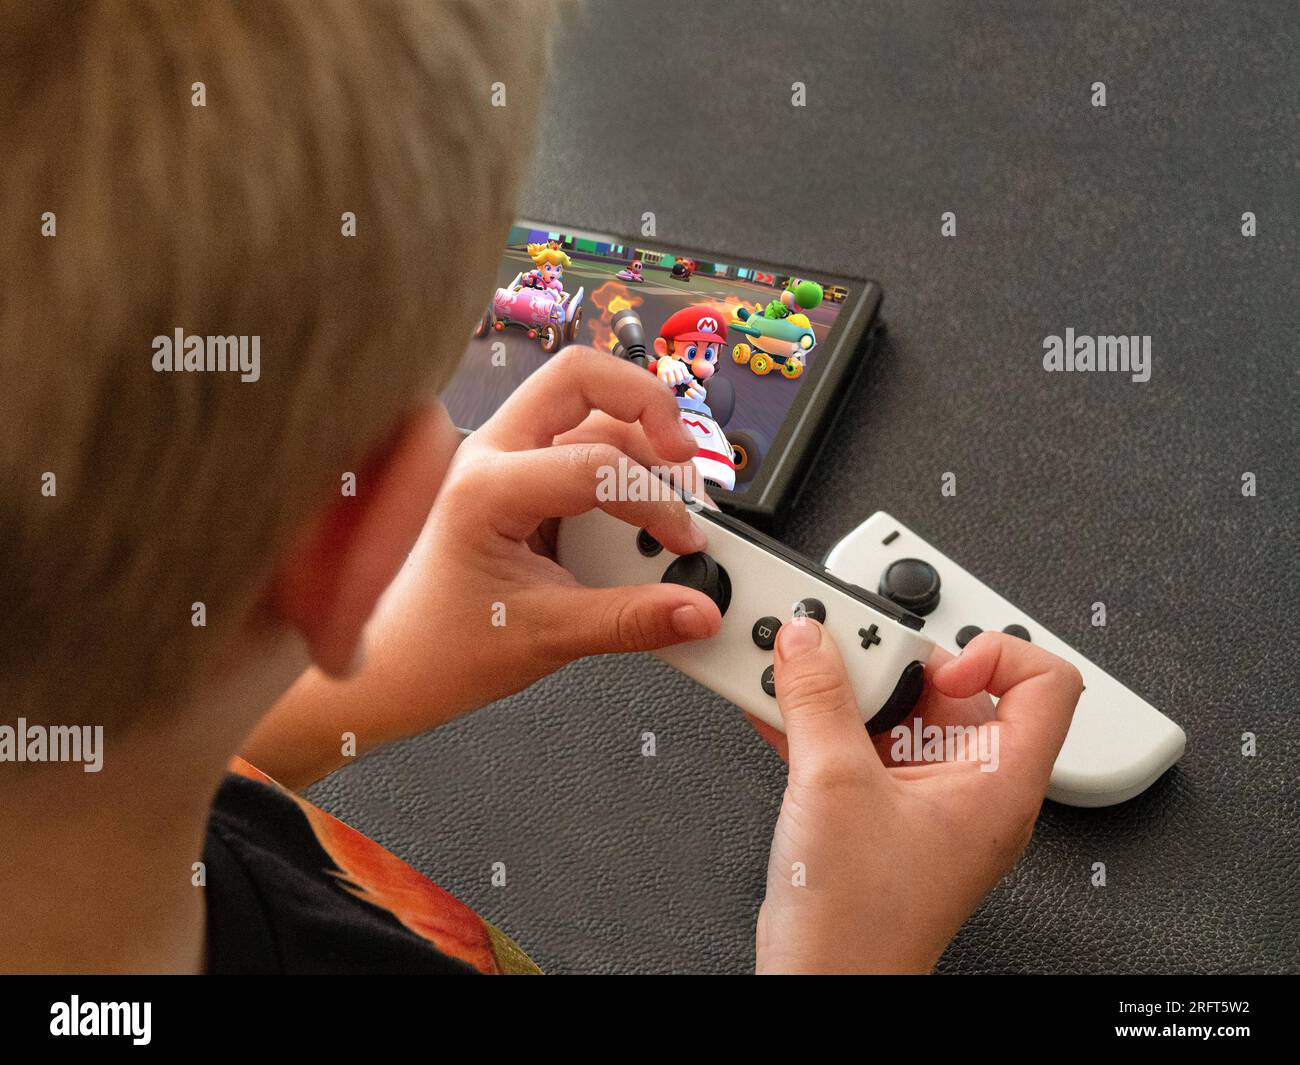 Jeune garçon jouant Mario Kart sur une nouvelle console Nintendo Switch populaire en mode portable. Gros plan sur les mains. Copenhague, Danemark - 5 août 2023. Banque D'Images